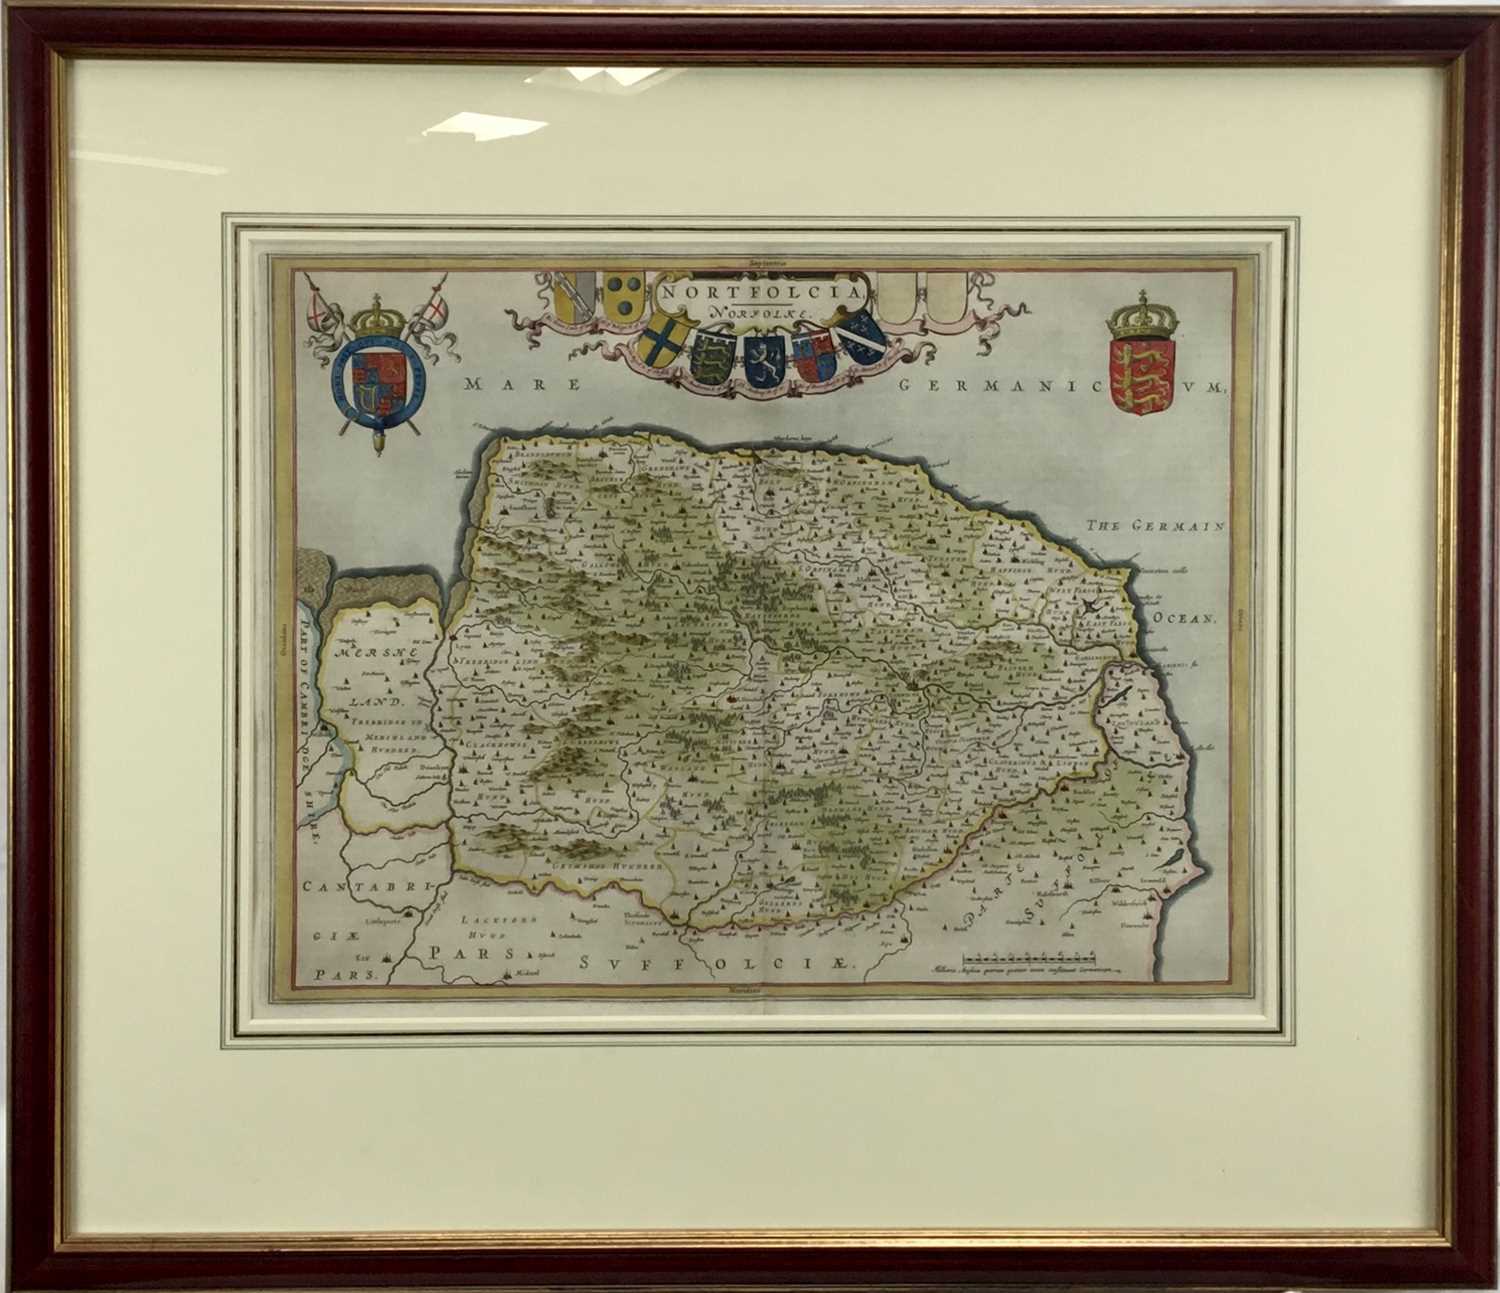 J Blaeu - hand coloured map of Norfolk, c1650. Framed and glazed.